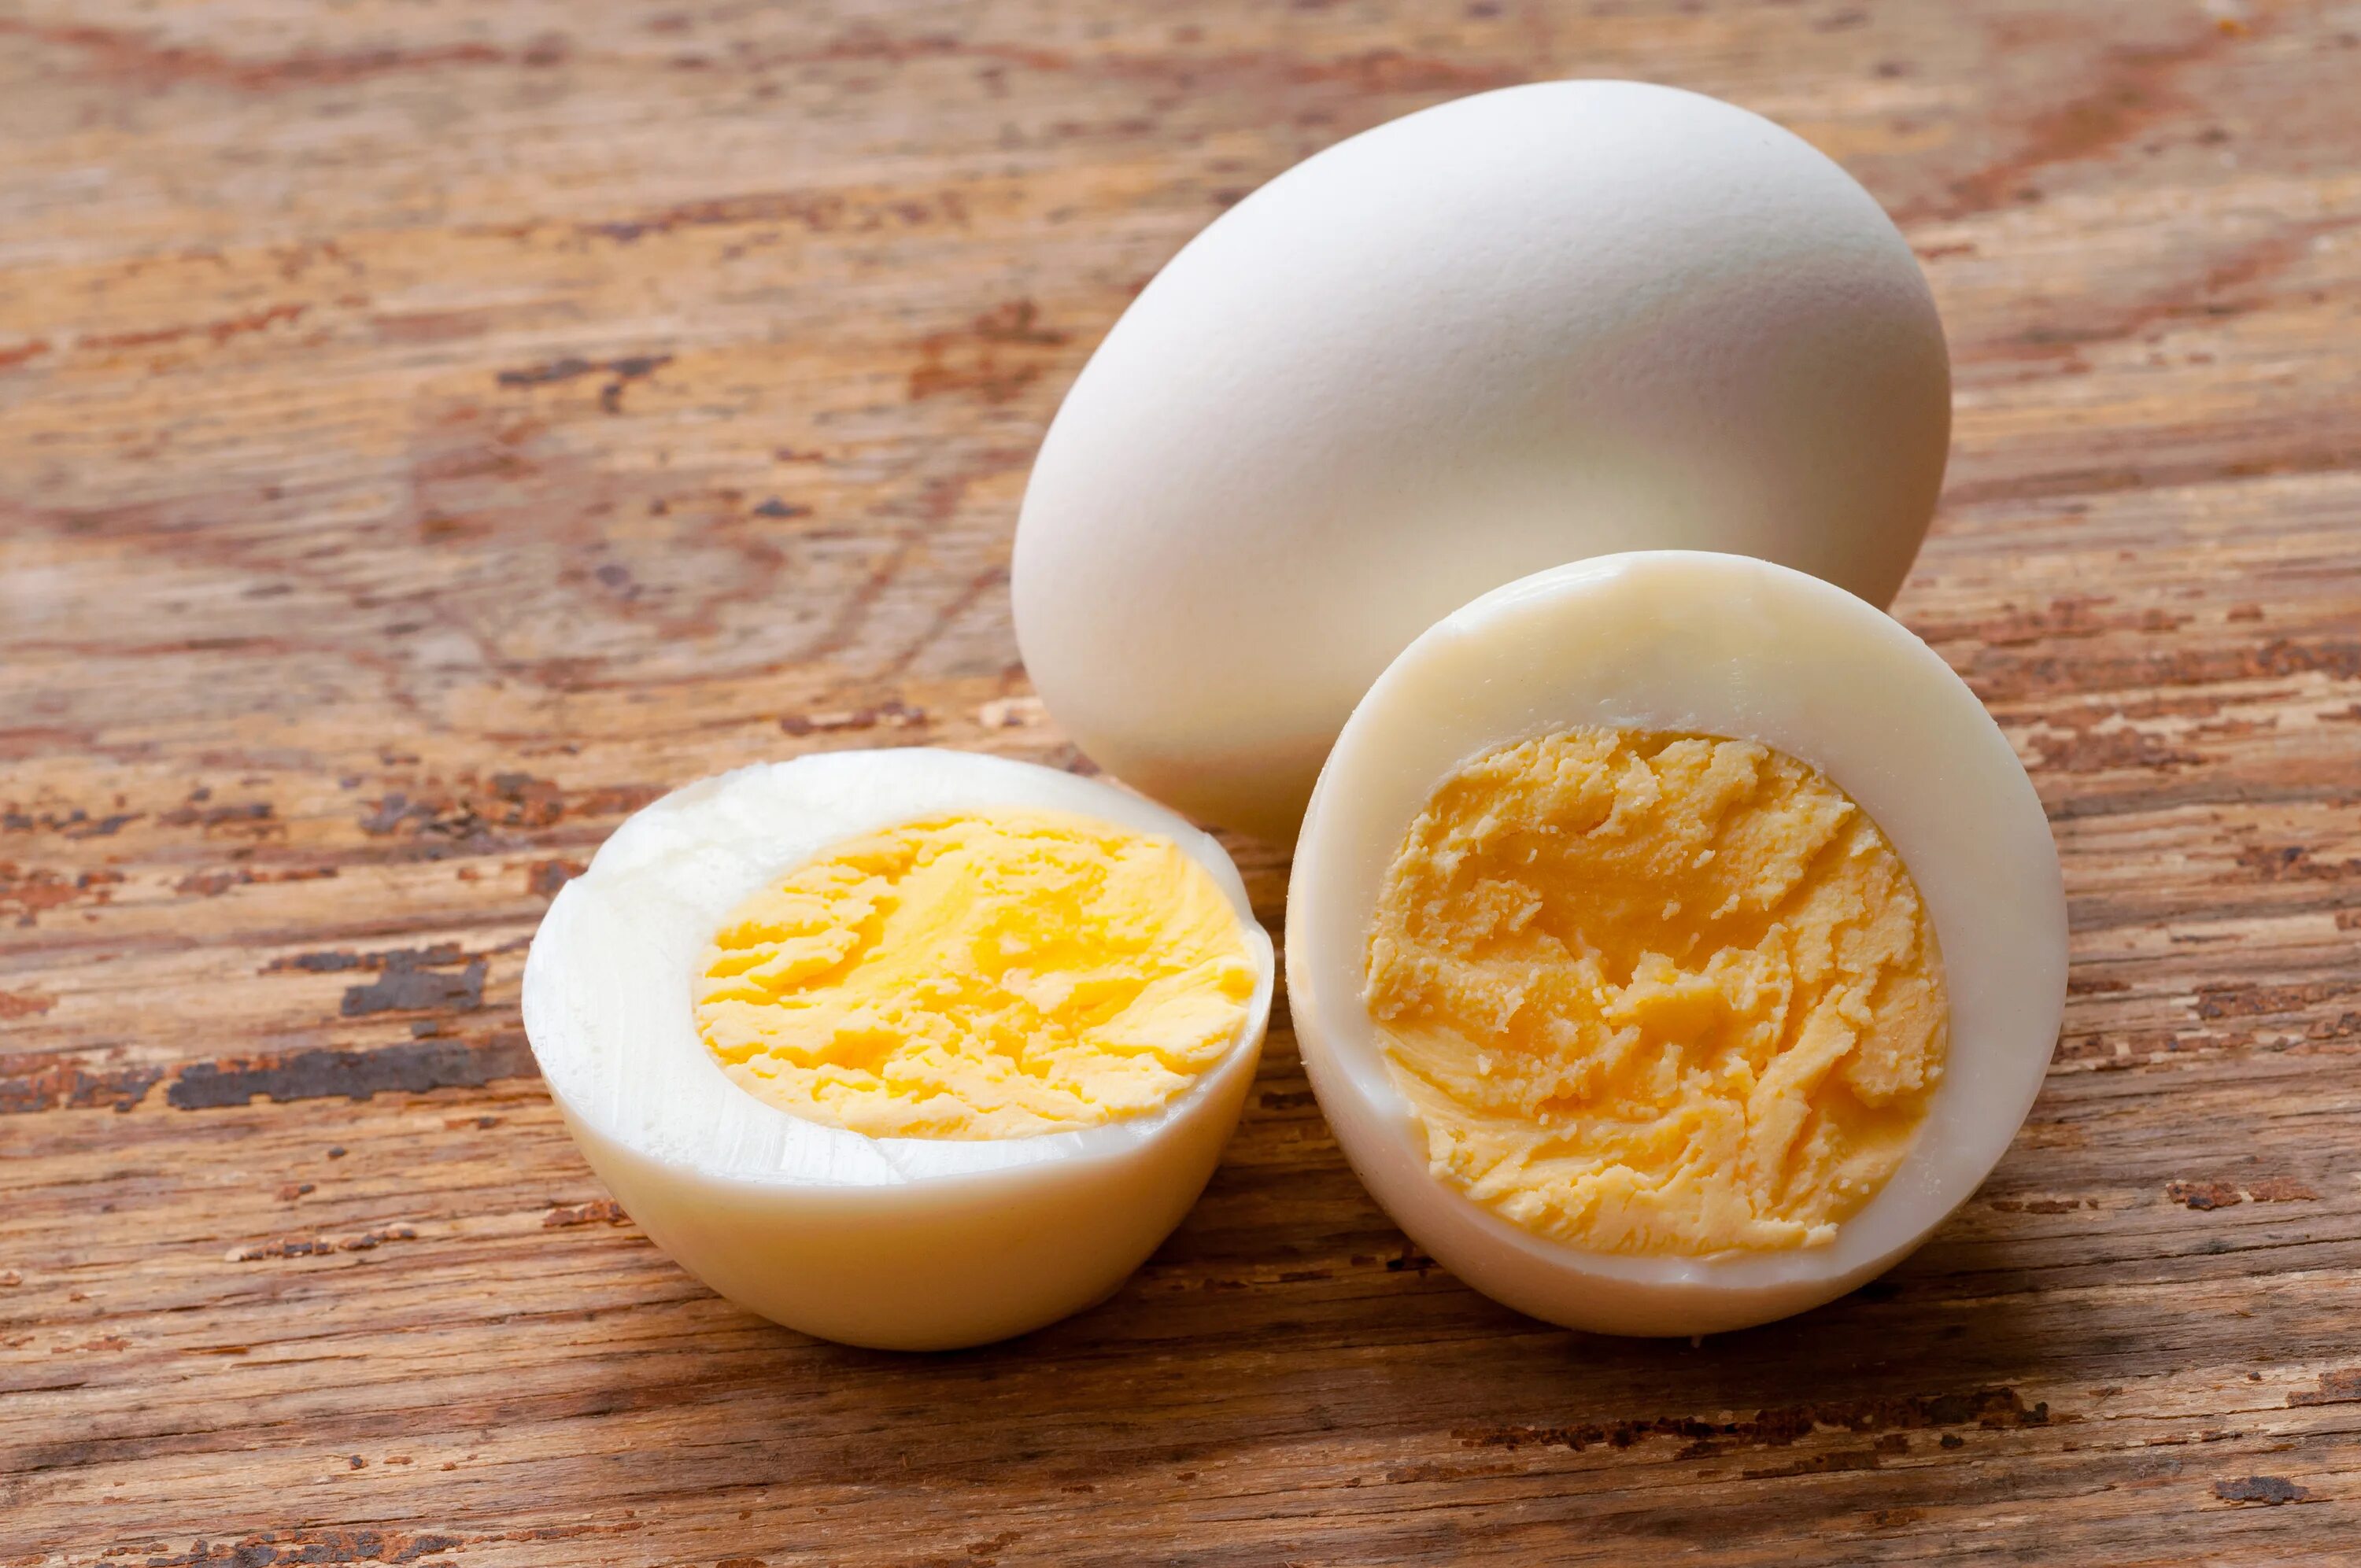 Вареные яйца. Яйца вкрутую. Яйцо куриное вареное. Яйцо в крутую.